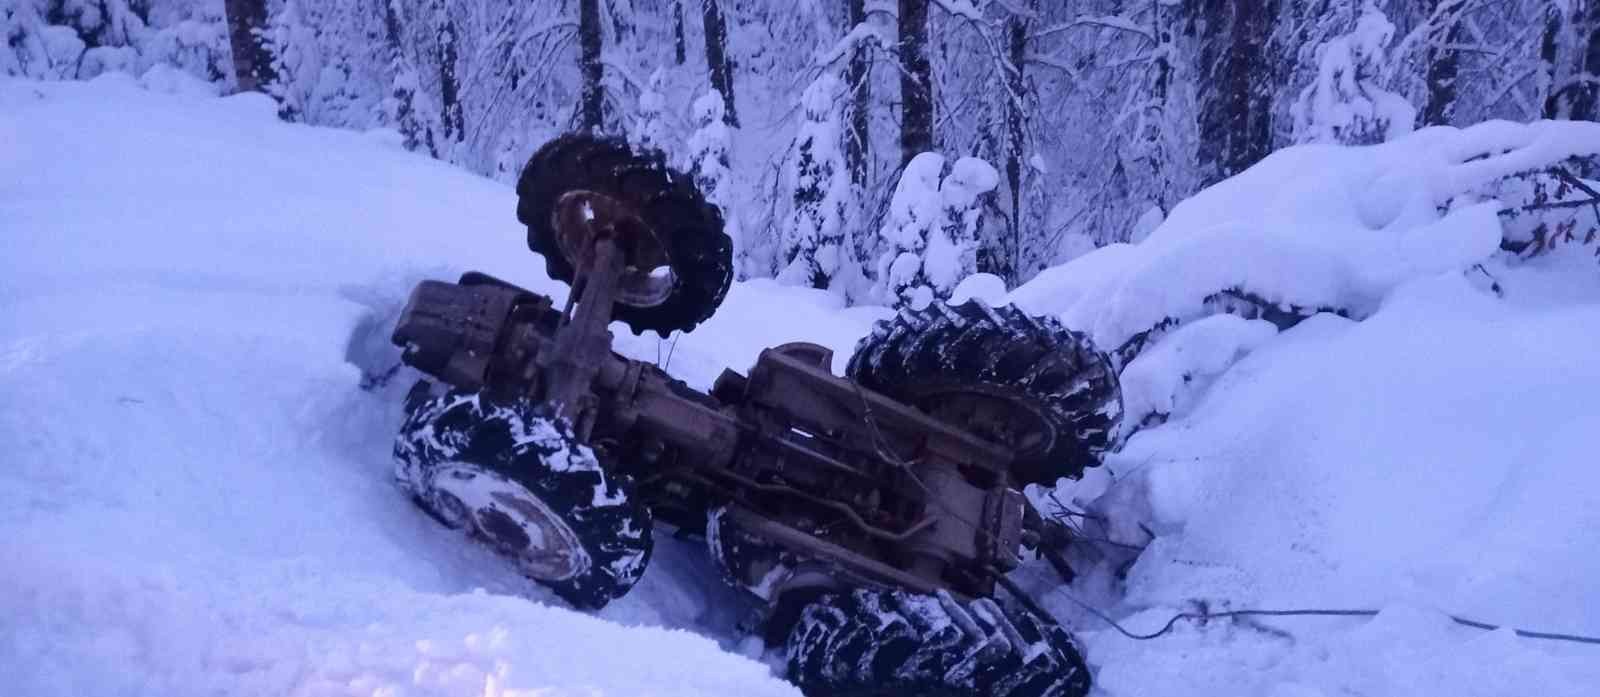 Karla kaplı yolda traktör takla attı: 1 yaralı #duzce